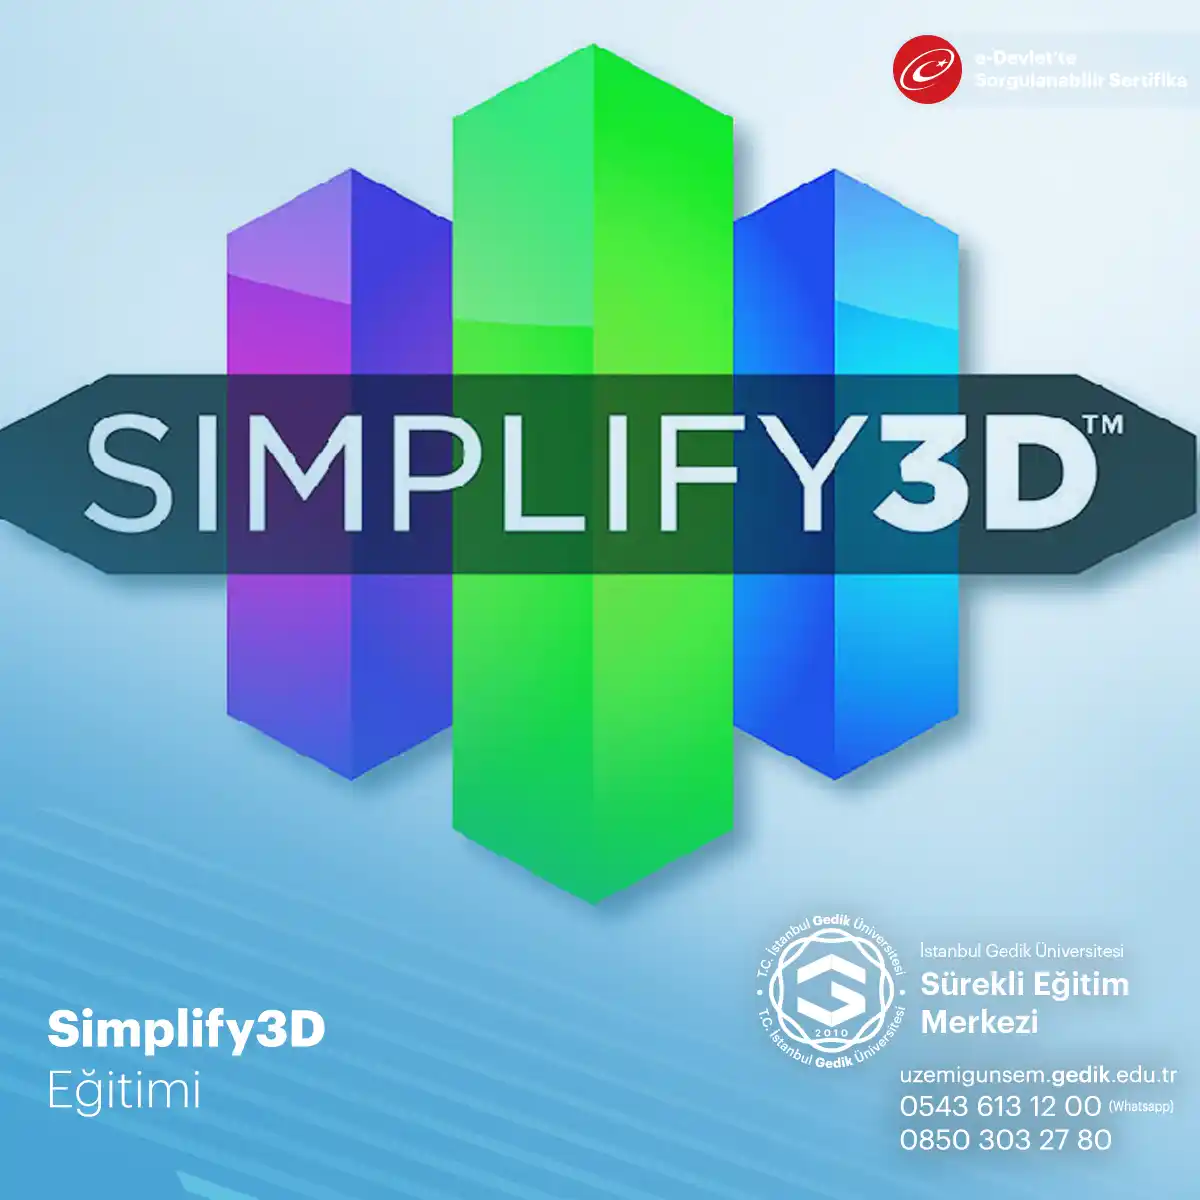 Simplify3D Eğitimi Sertifika Programı